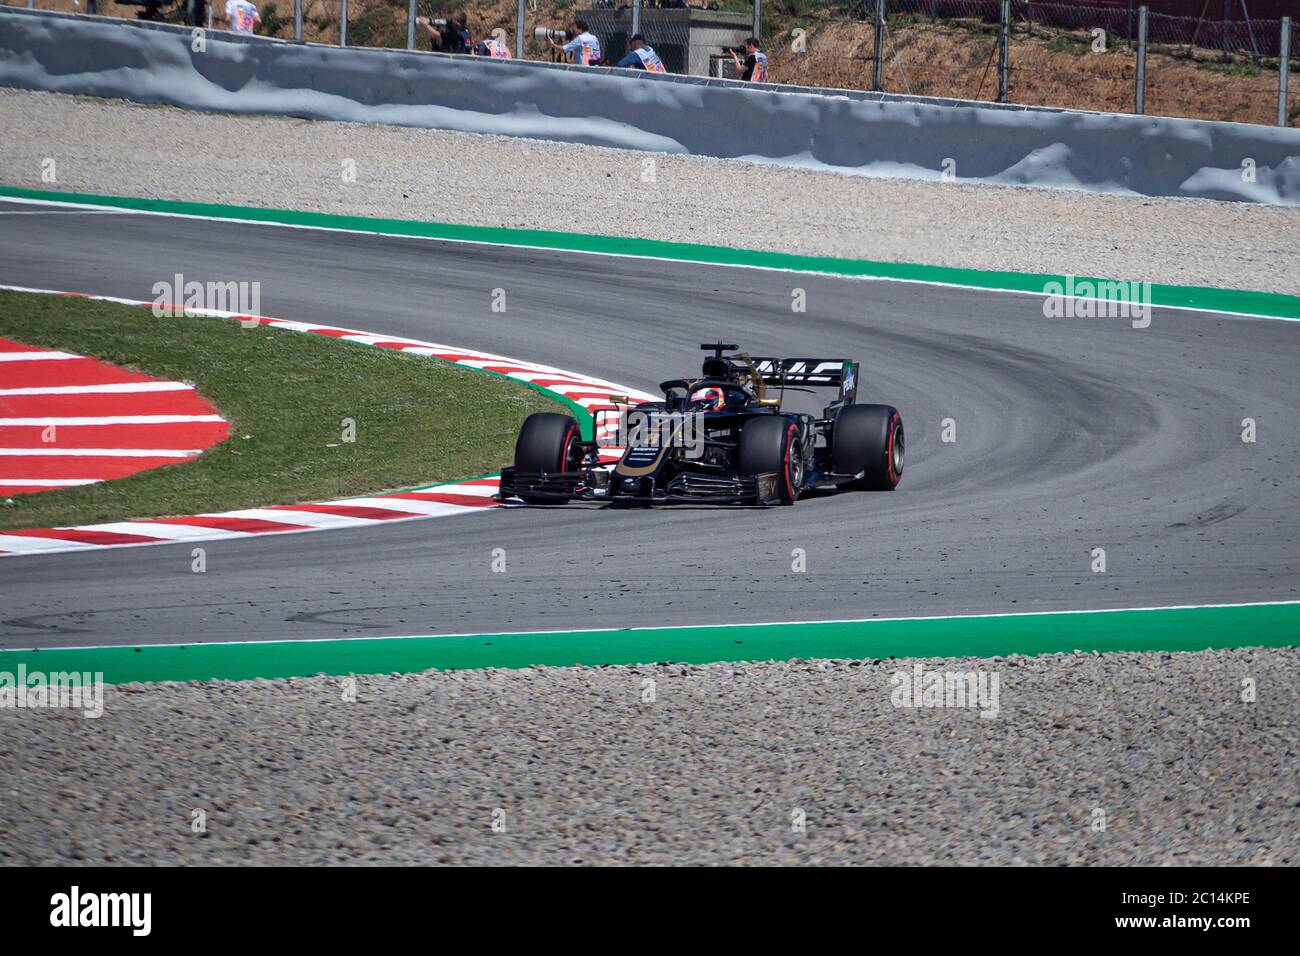 MONTMELLO, SPANIEN-10. MAI 2019: Haas VF-19 Formel-1-Rennwagen (Fahrer: Romain Grosjean) Stockfoto